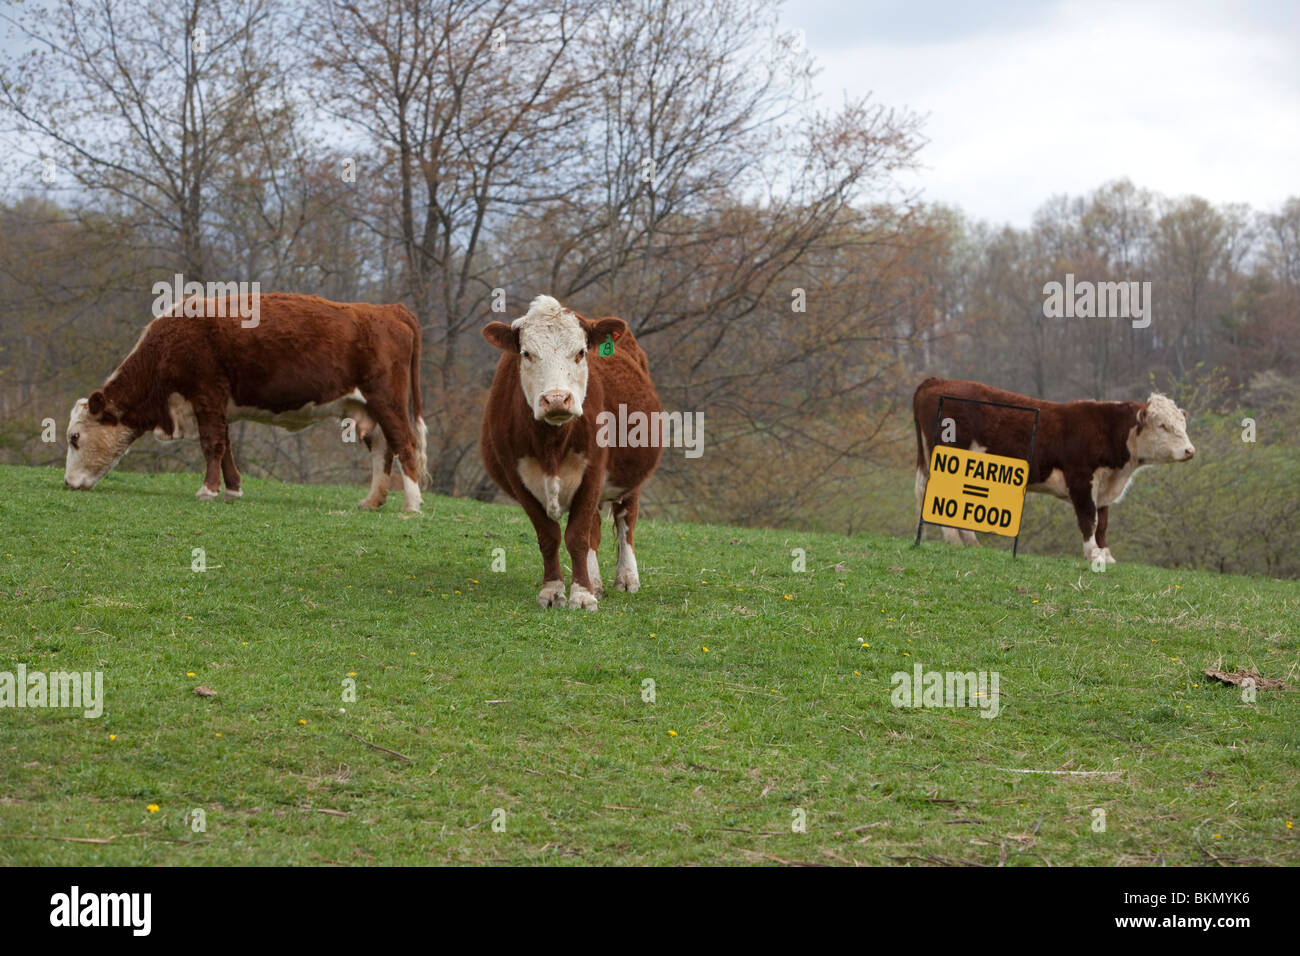 Dameron, West Virginia - un signe dans un pâturage sur une petite ferme de la Virginie de l'Ouest favorise l'agriculture. Banque D'Images